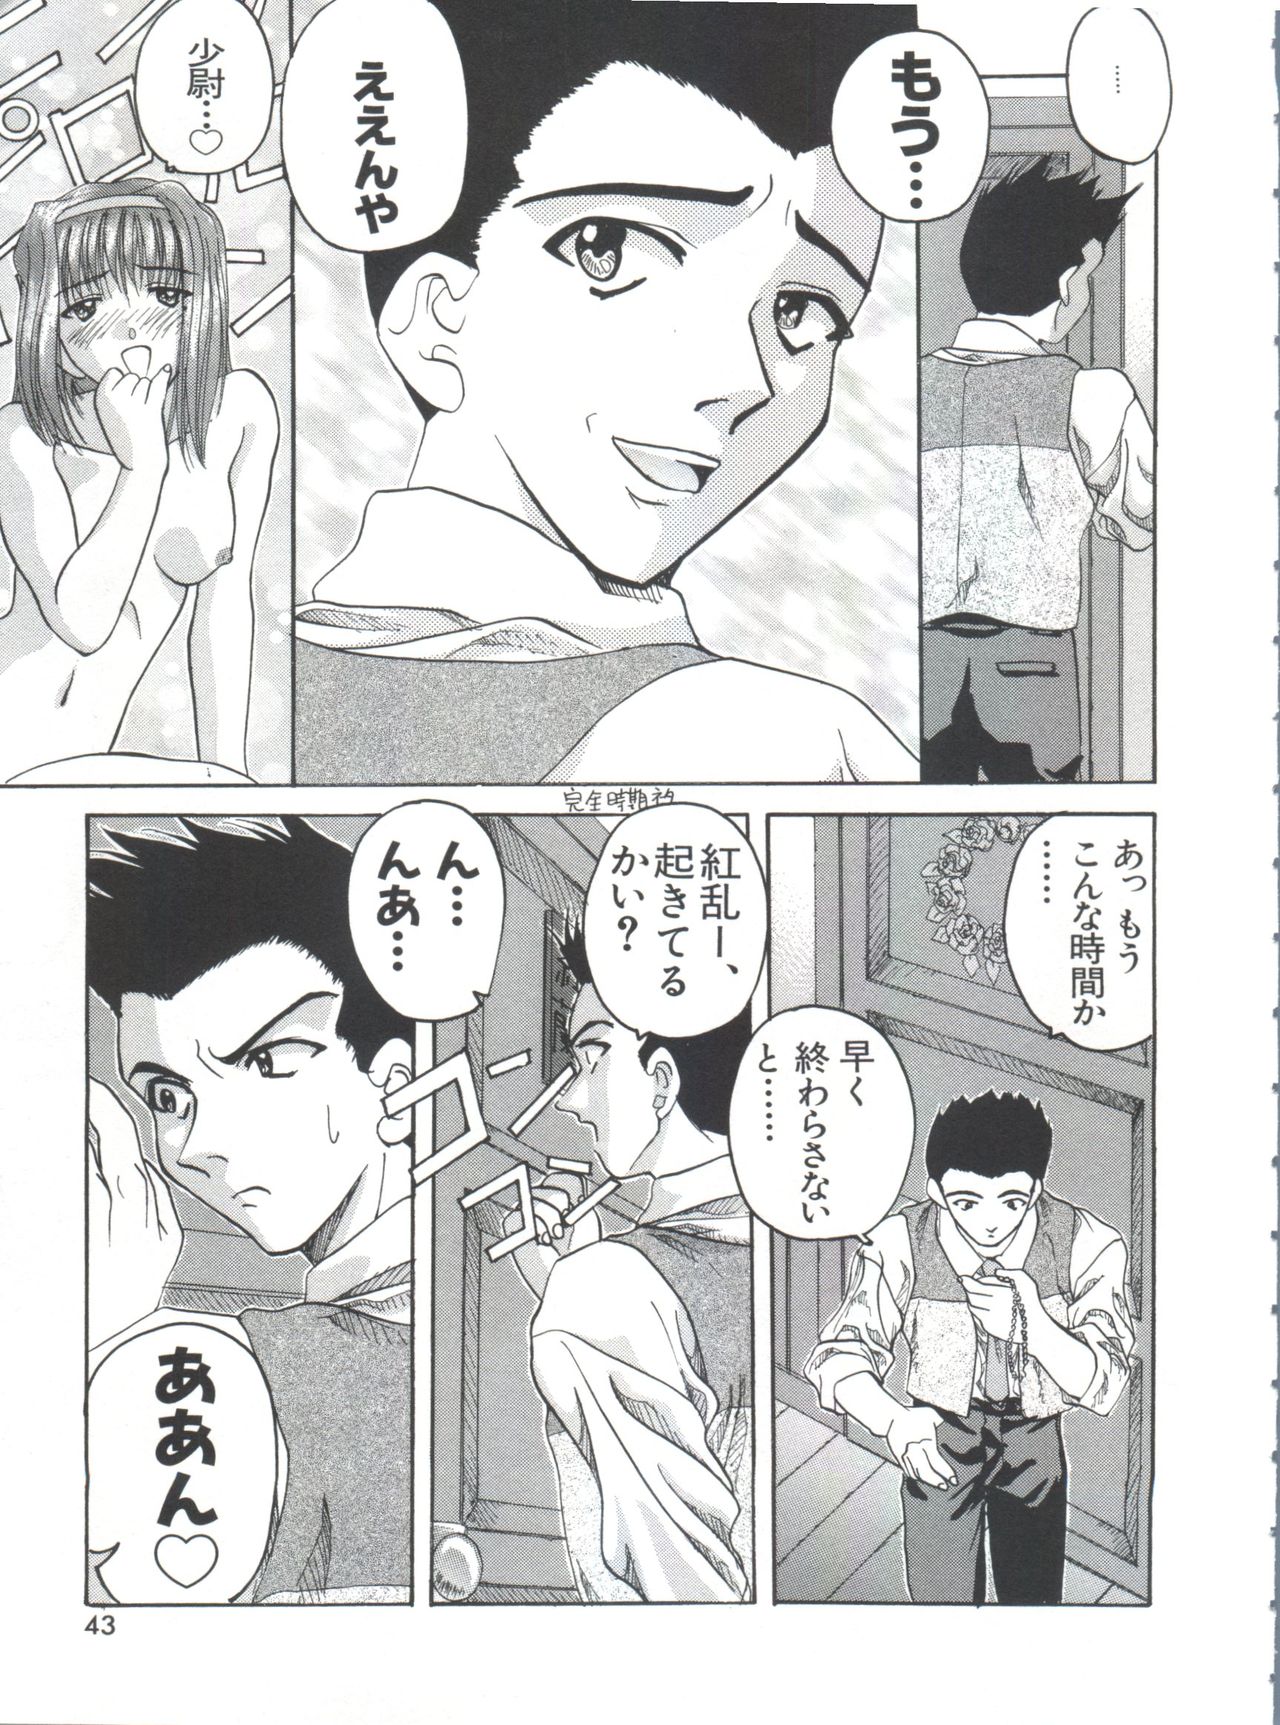 [Anthology] Teigeki Ou (Sakura Wars) page 46 full